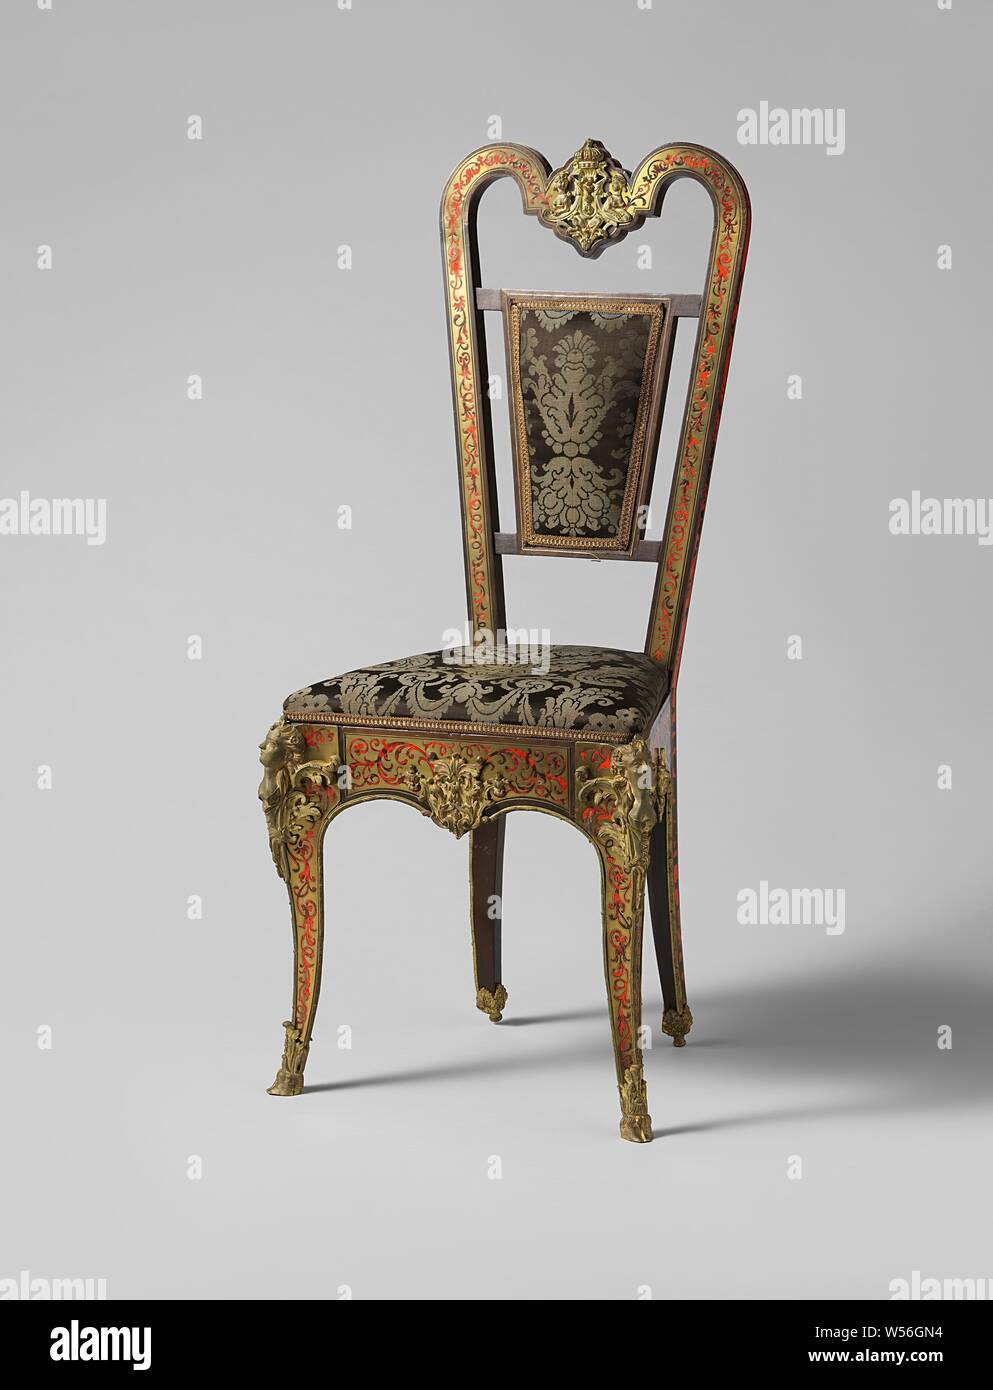 Placage d'ébène chaise avec marqueterie Boulle, placage d'Ébène chaise avec marqueterie Boulle. La présidence est estampillé W., anonyme, 1800 - 1900, de l'ébène (bois), le bois (matière végétale), laiton (alliage), dorure (matériau), soie, dorure, h 112,5 cm × w 51 cm × d 41 cm × H 51 cm × w 46 cm d 35 cm Banque D'Images